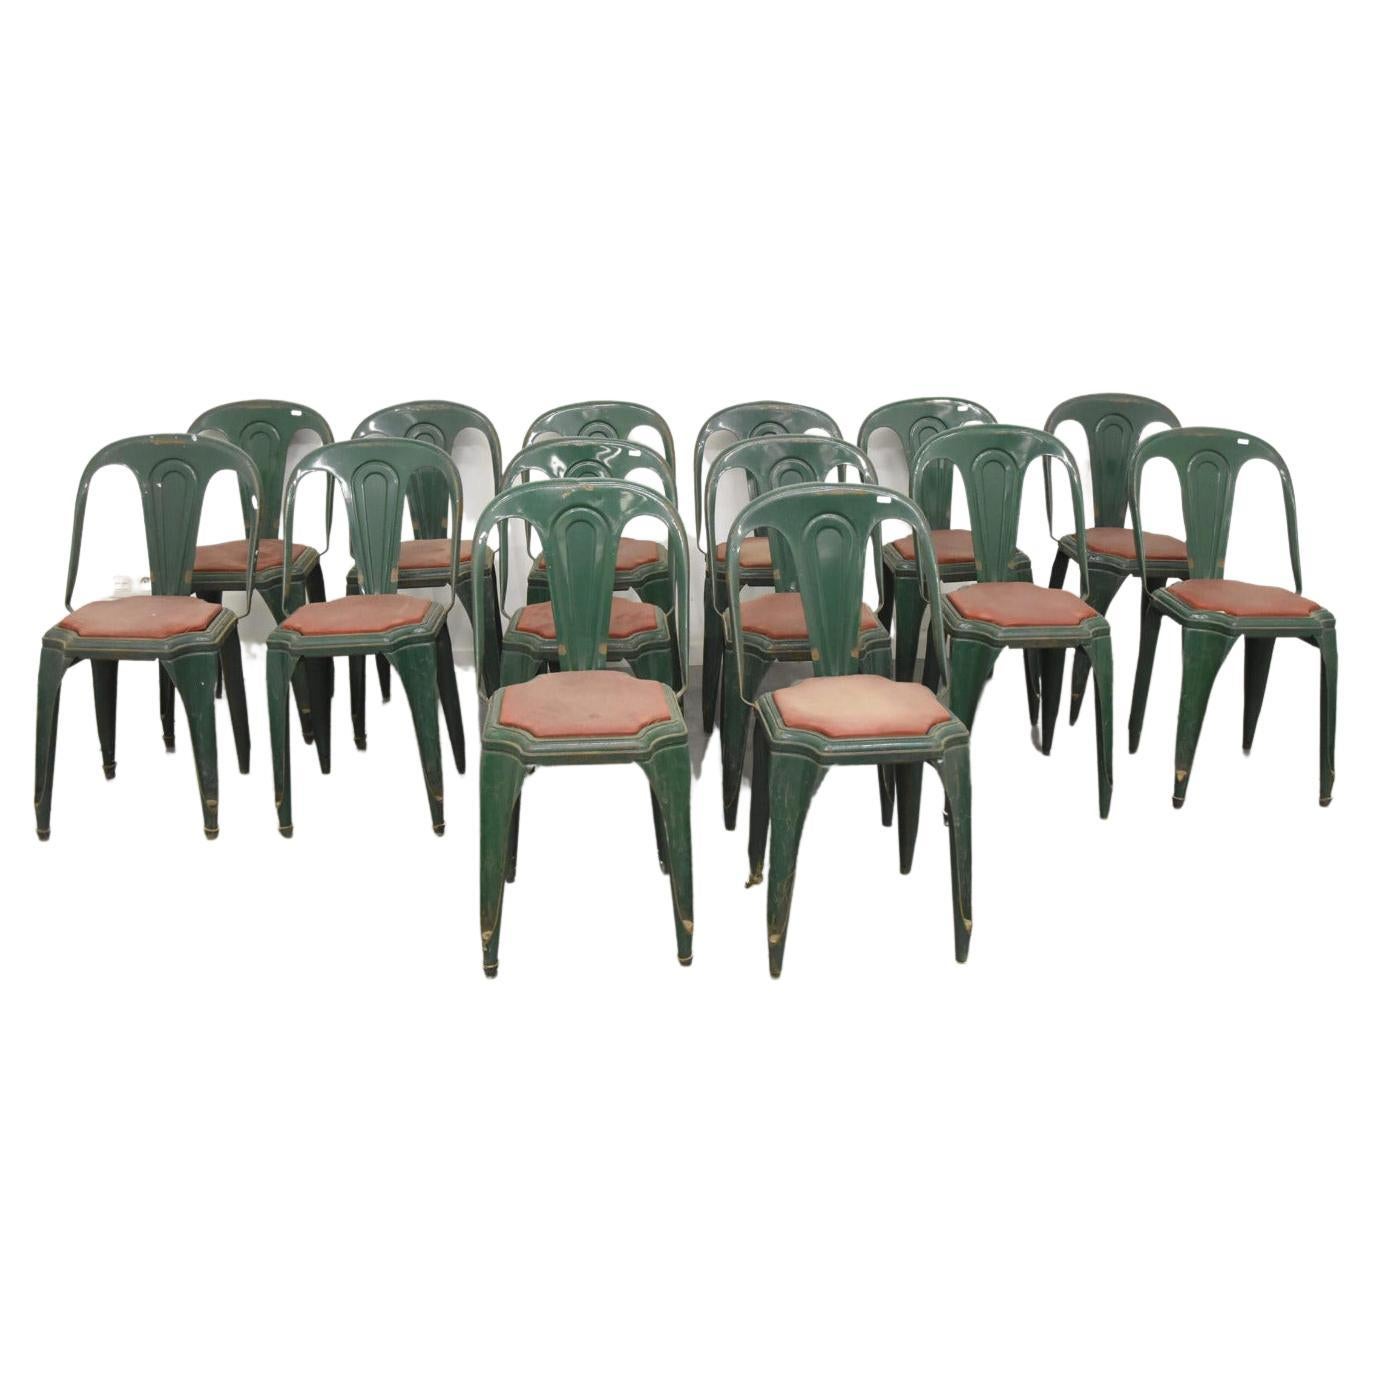 Suite de 14 chaises industrielles de la marque Fibrocit, datant d'environ 1950